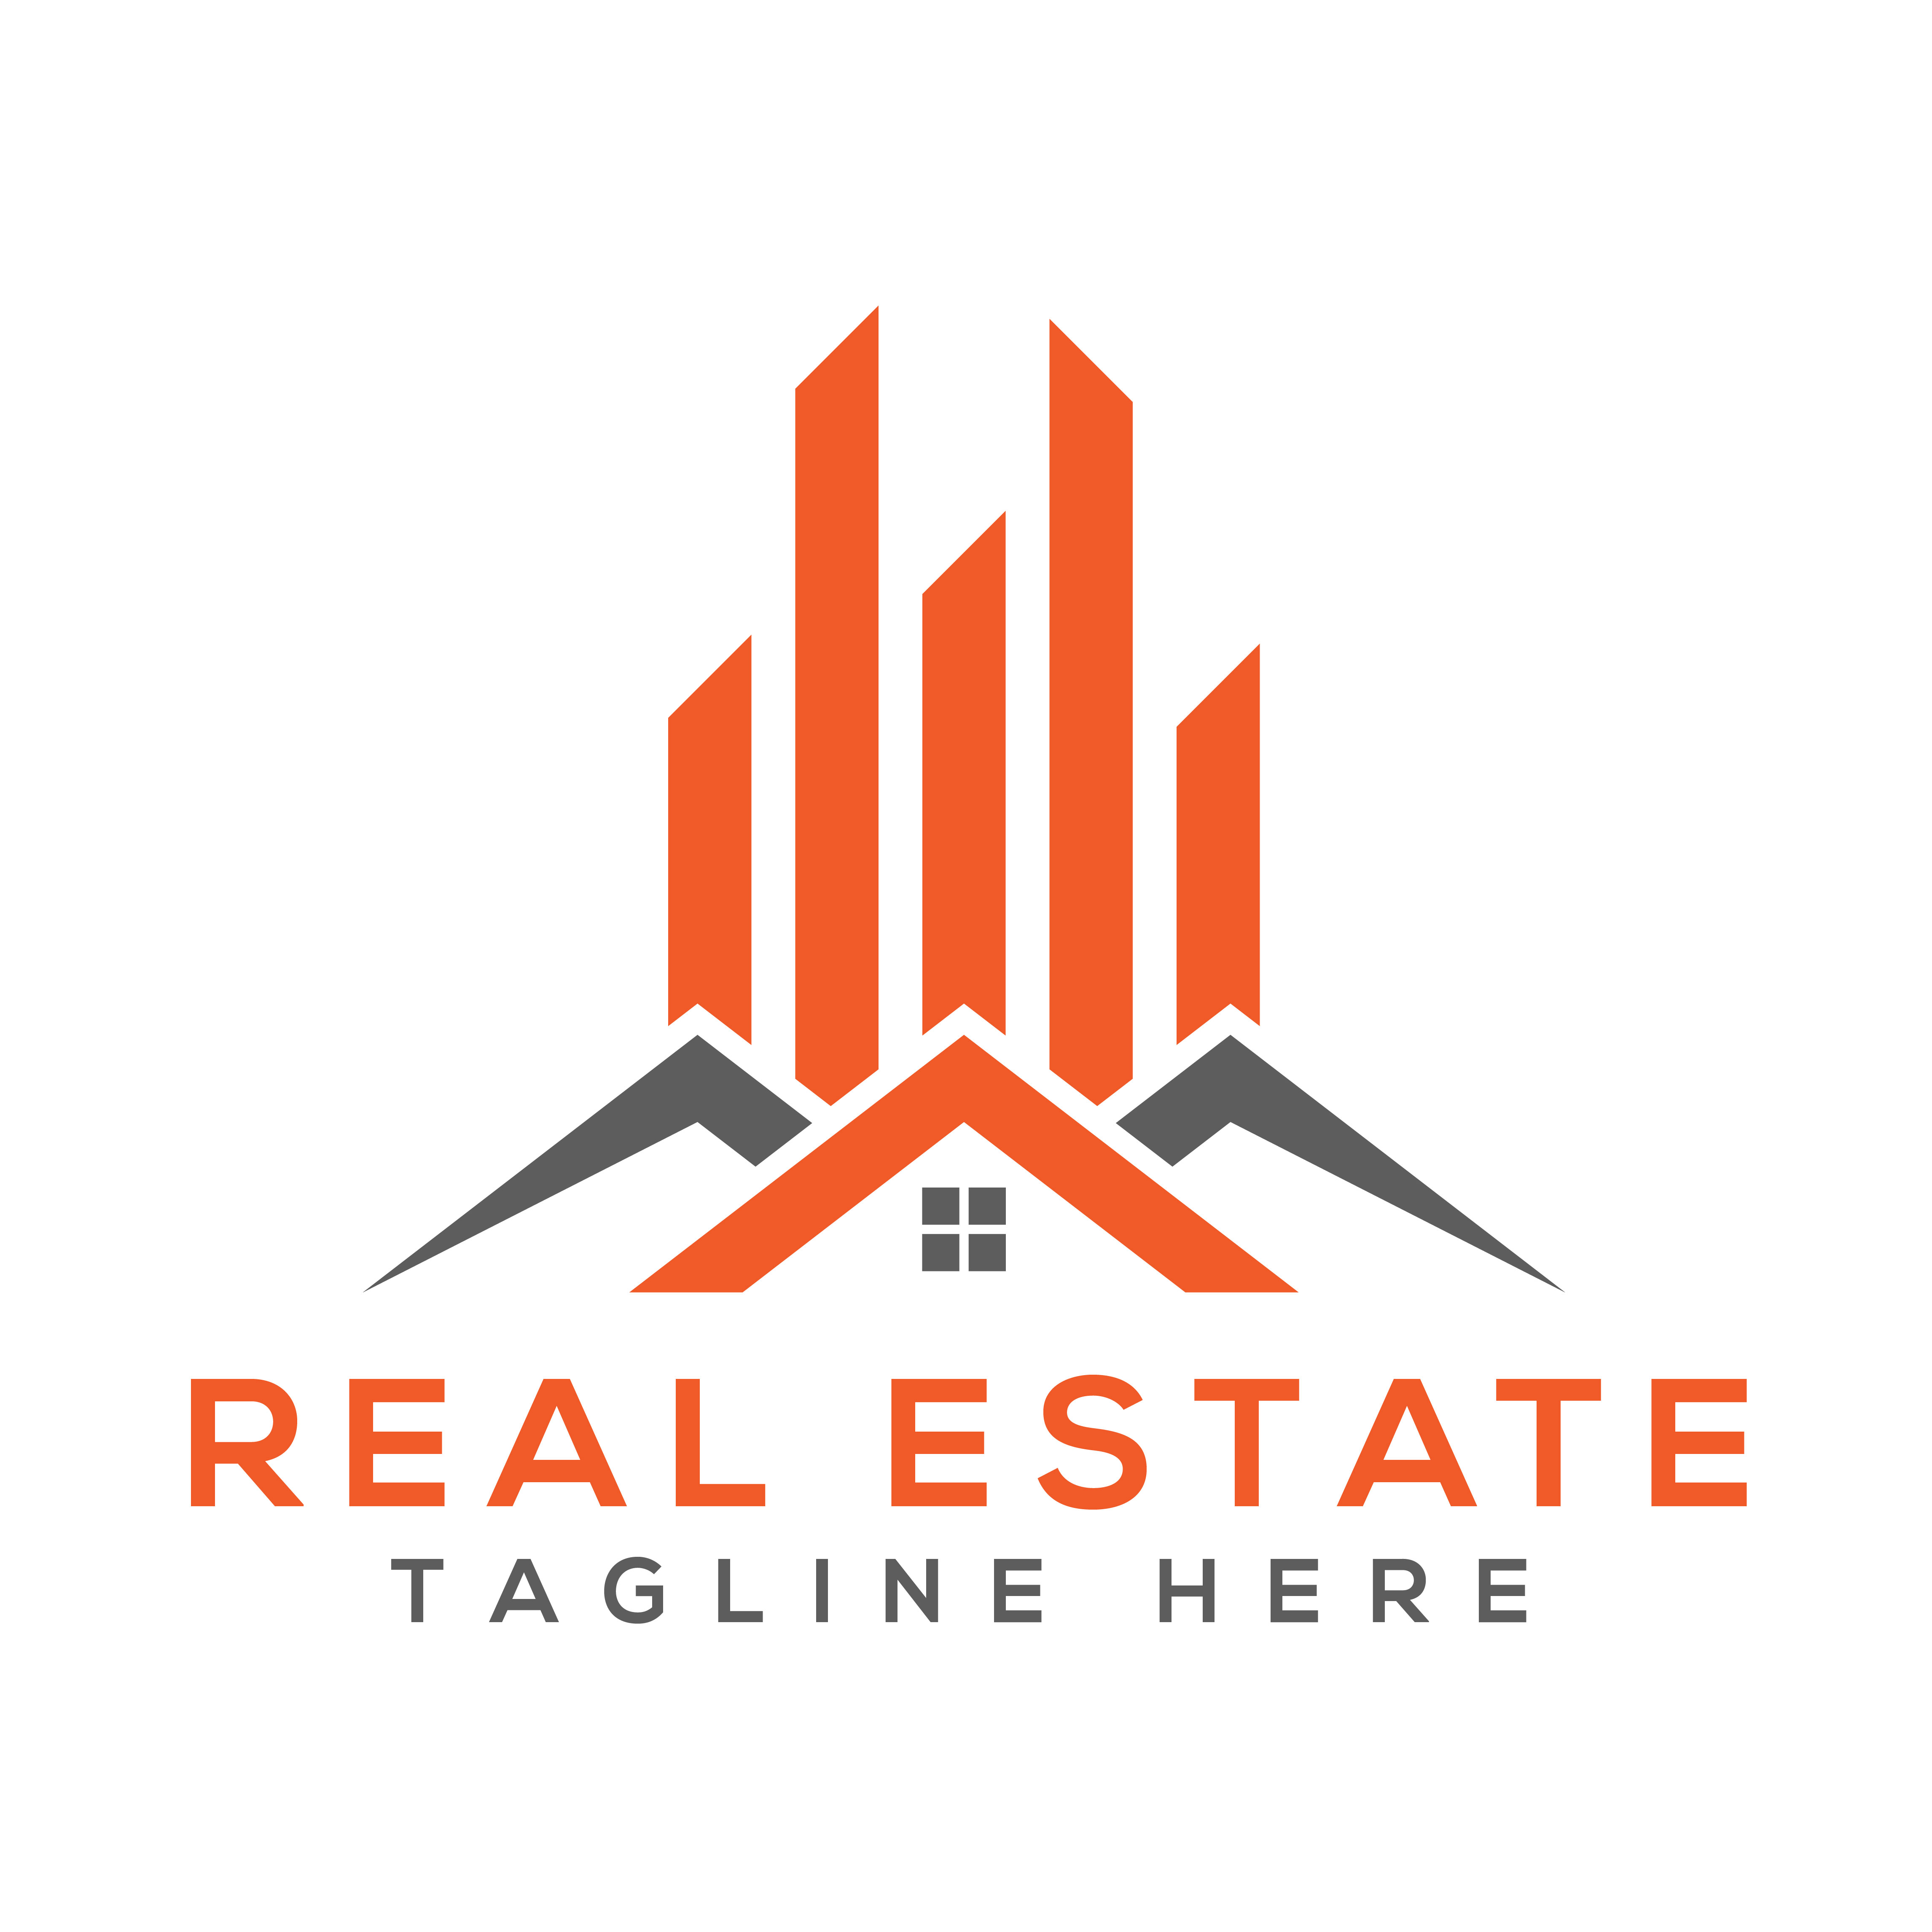 real estate logos design